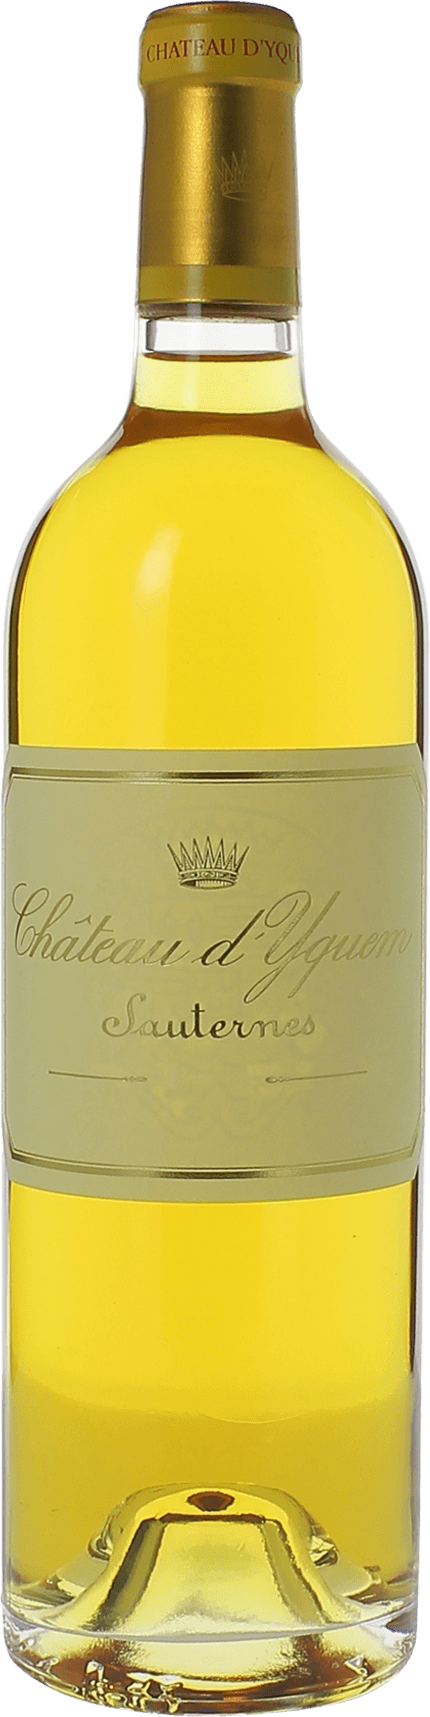 Yquem 1929 1er Grand cru class Sauternes, Bordeaux blanc